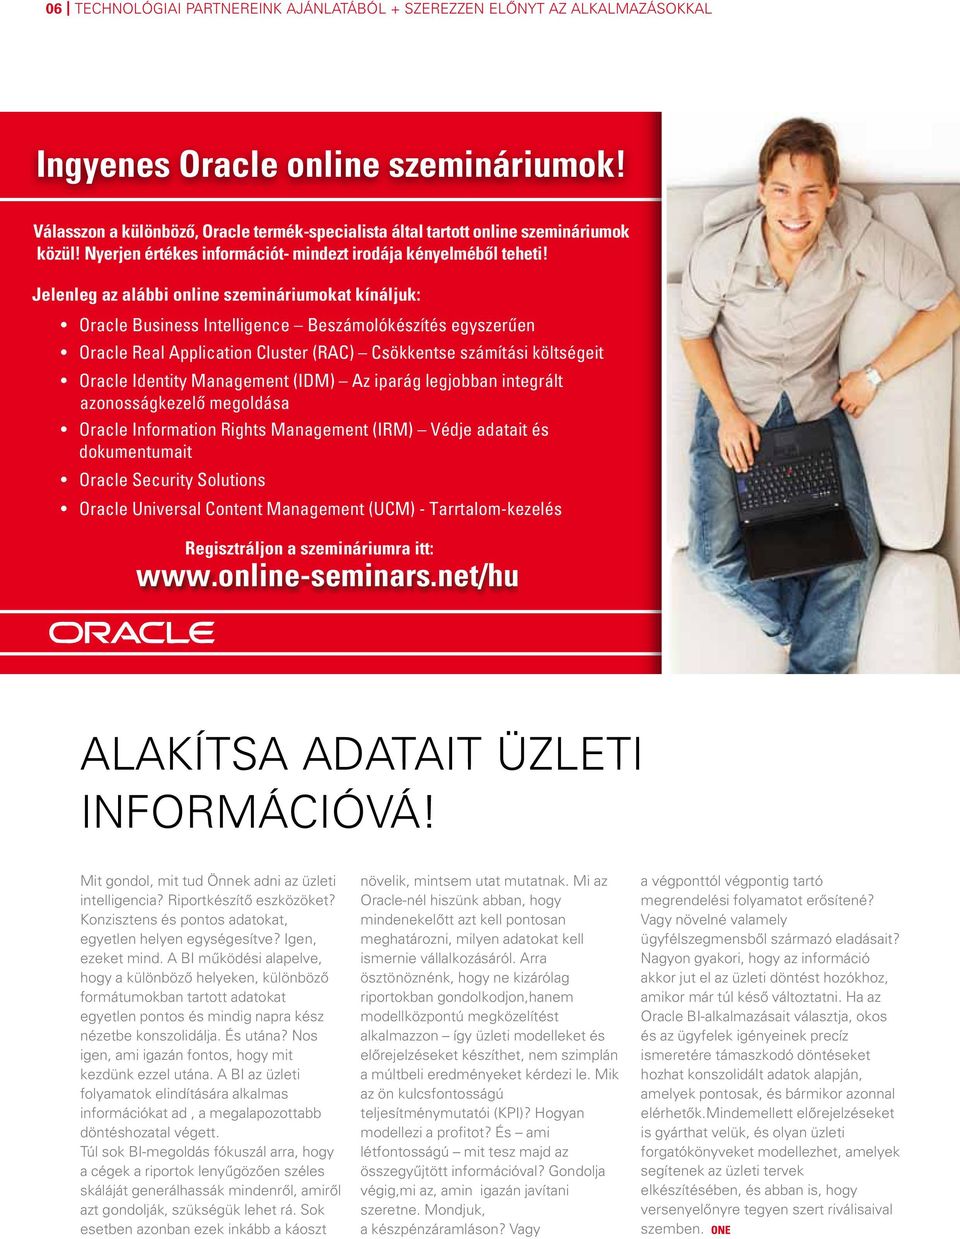 Jelenleg az alábbi online szemináriumokat kínáljuk: Oracle Business Intelligence Beszámolókészítés egyszerűen Oracle Real Application Cluster (RAC) Csökkentse számítási költségeit Oracle Identity